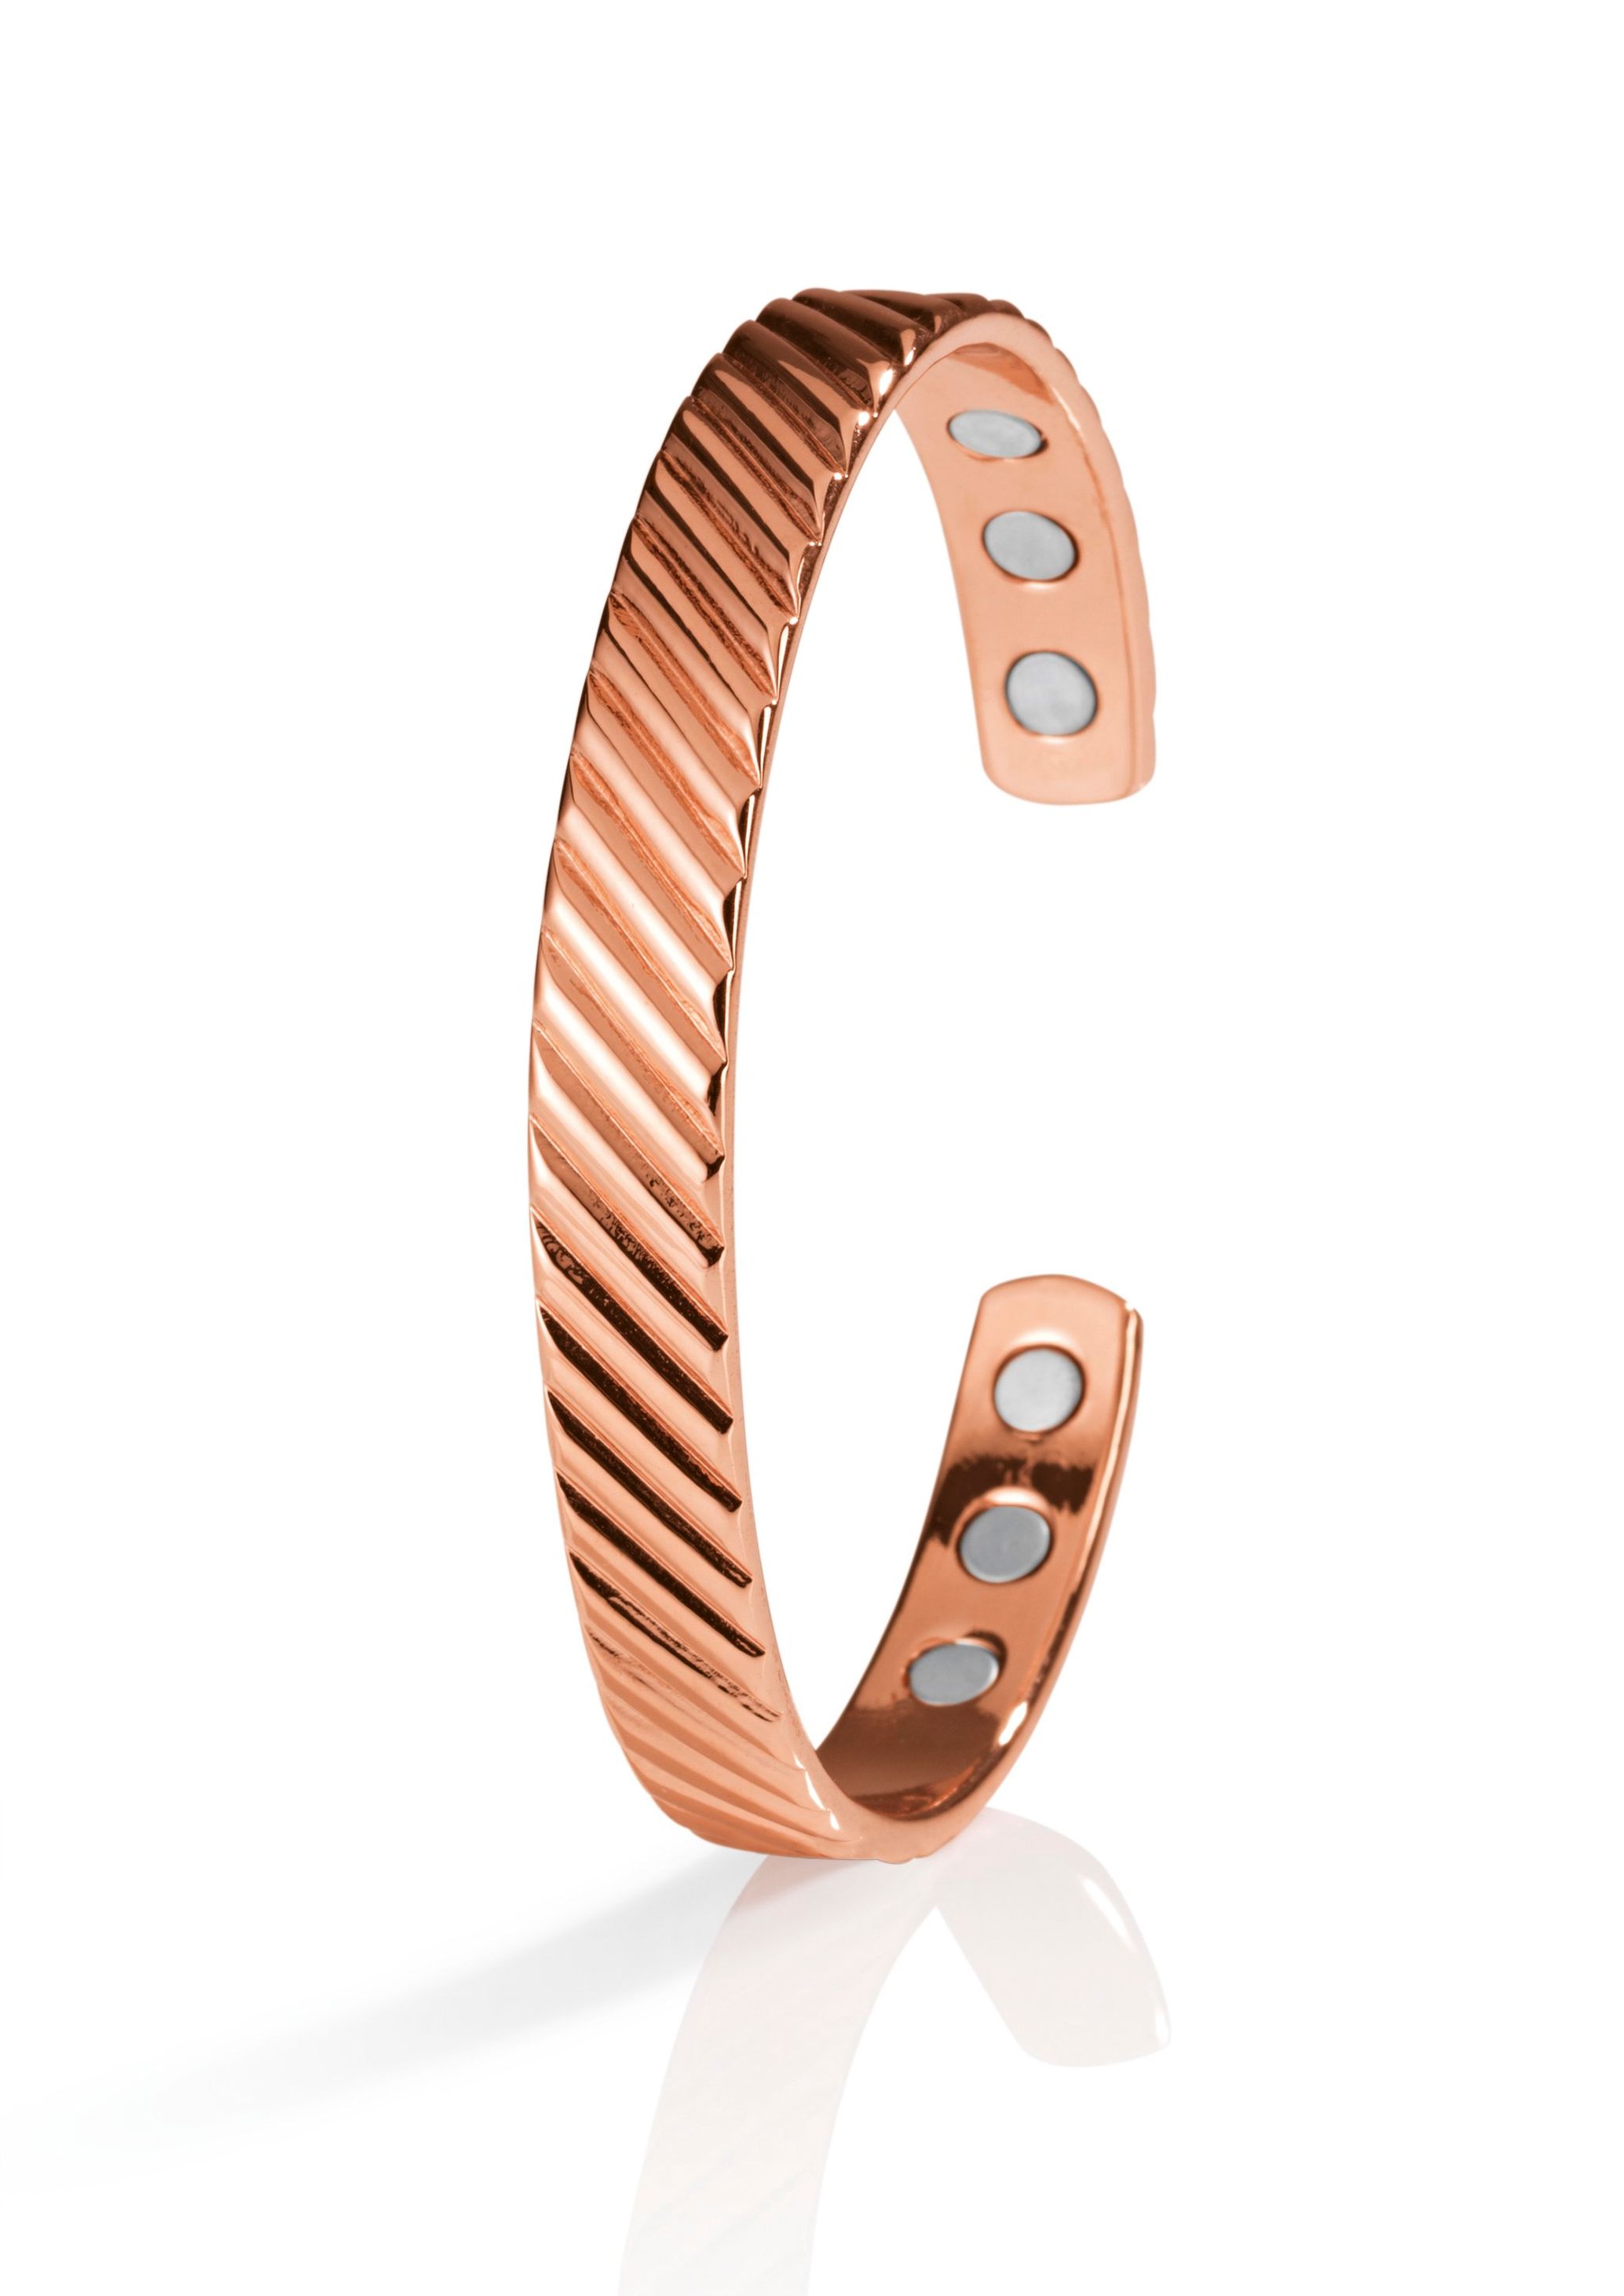 VITALmaxx Kupfer-Armband inkl. 6 Magnete bestellen | Weltbild.de